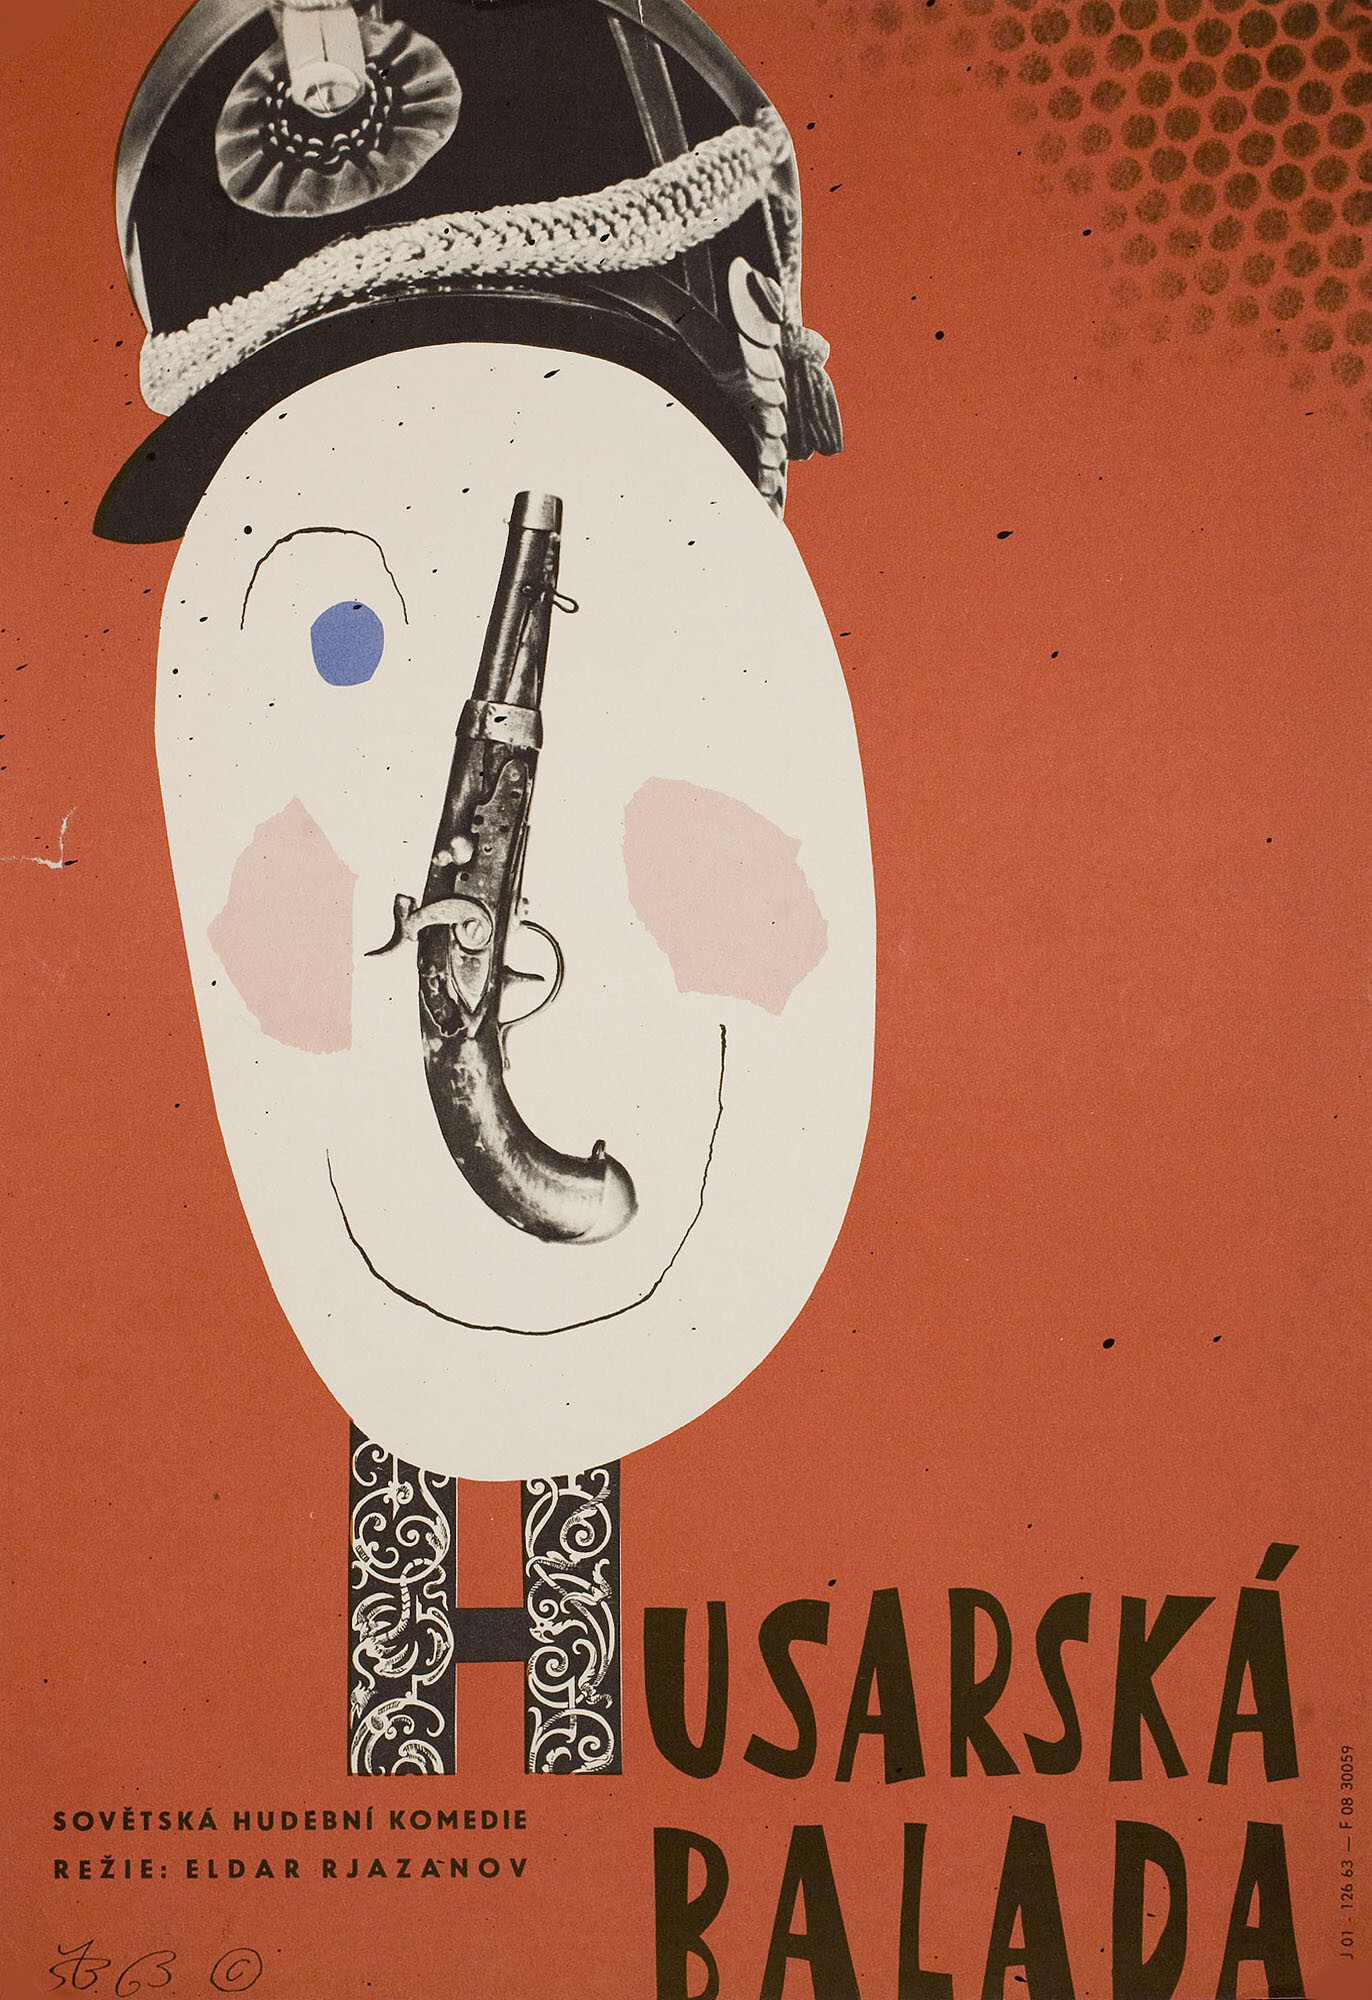 Гусарская баллада (режиссёр Эльдар Рязанов, 1963), чехословацкий постер к фильму, автор Степан Богумил, 1963 год